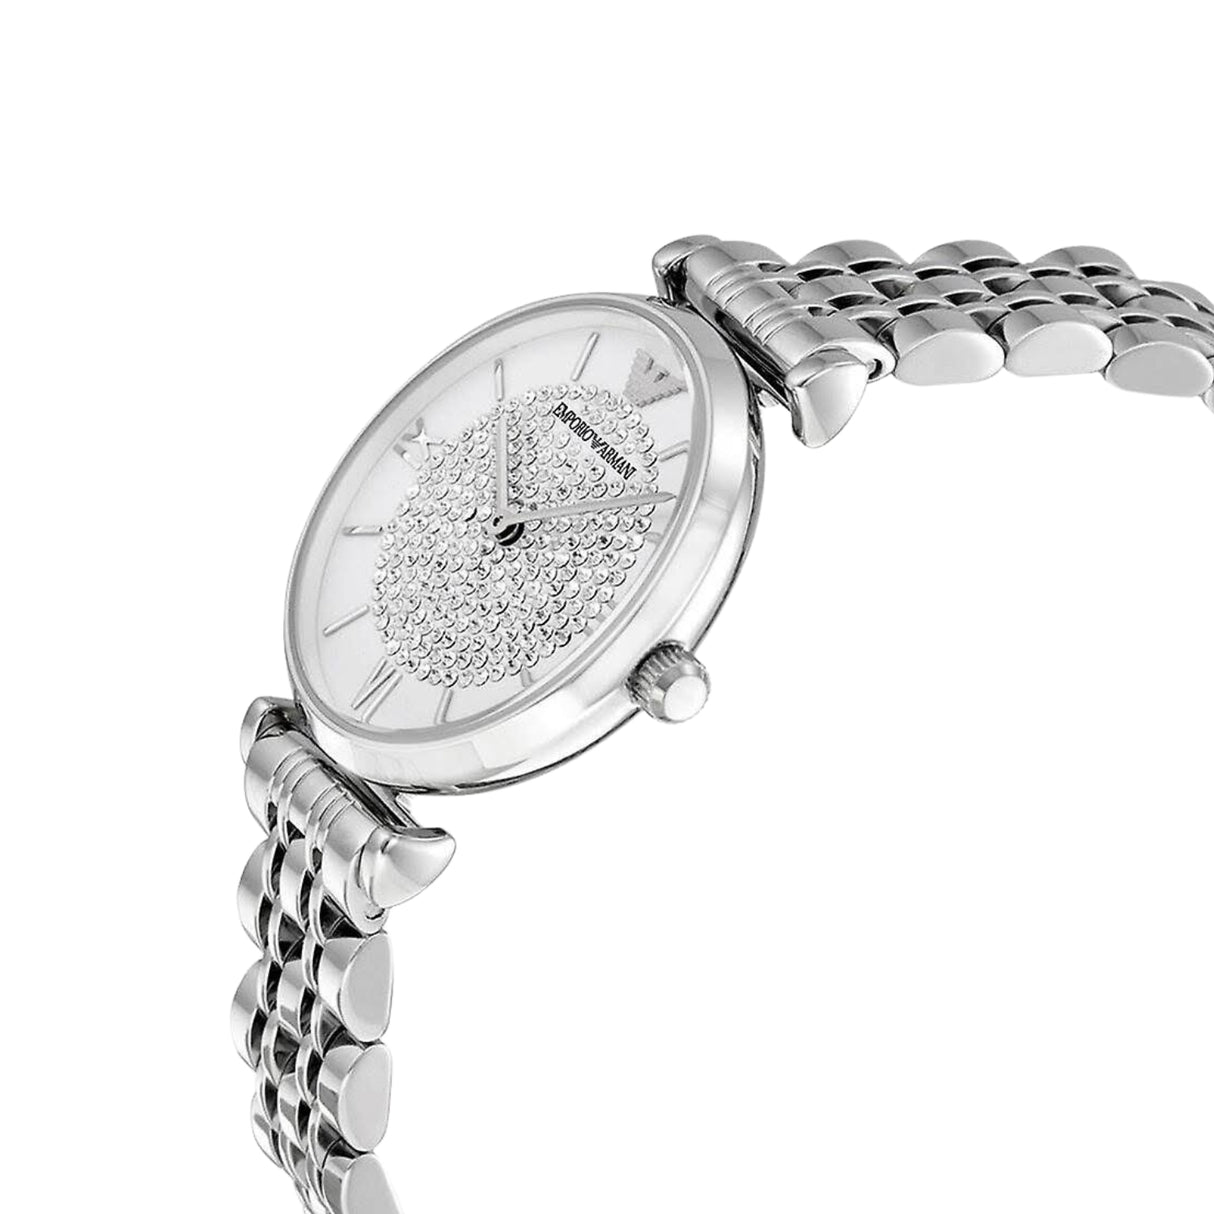 Emporio Armani Ladies Watch T-Bar Gianni Silver Crystal AR1925